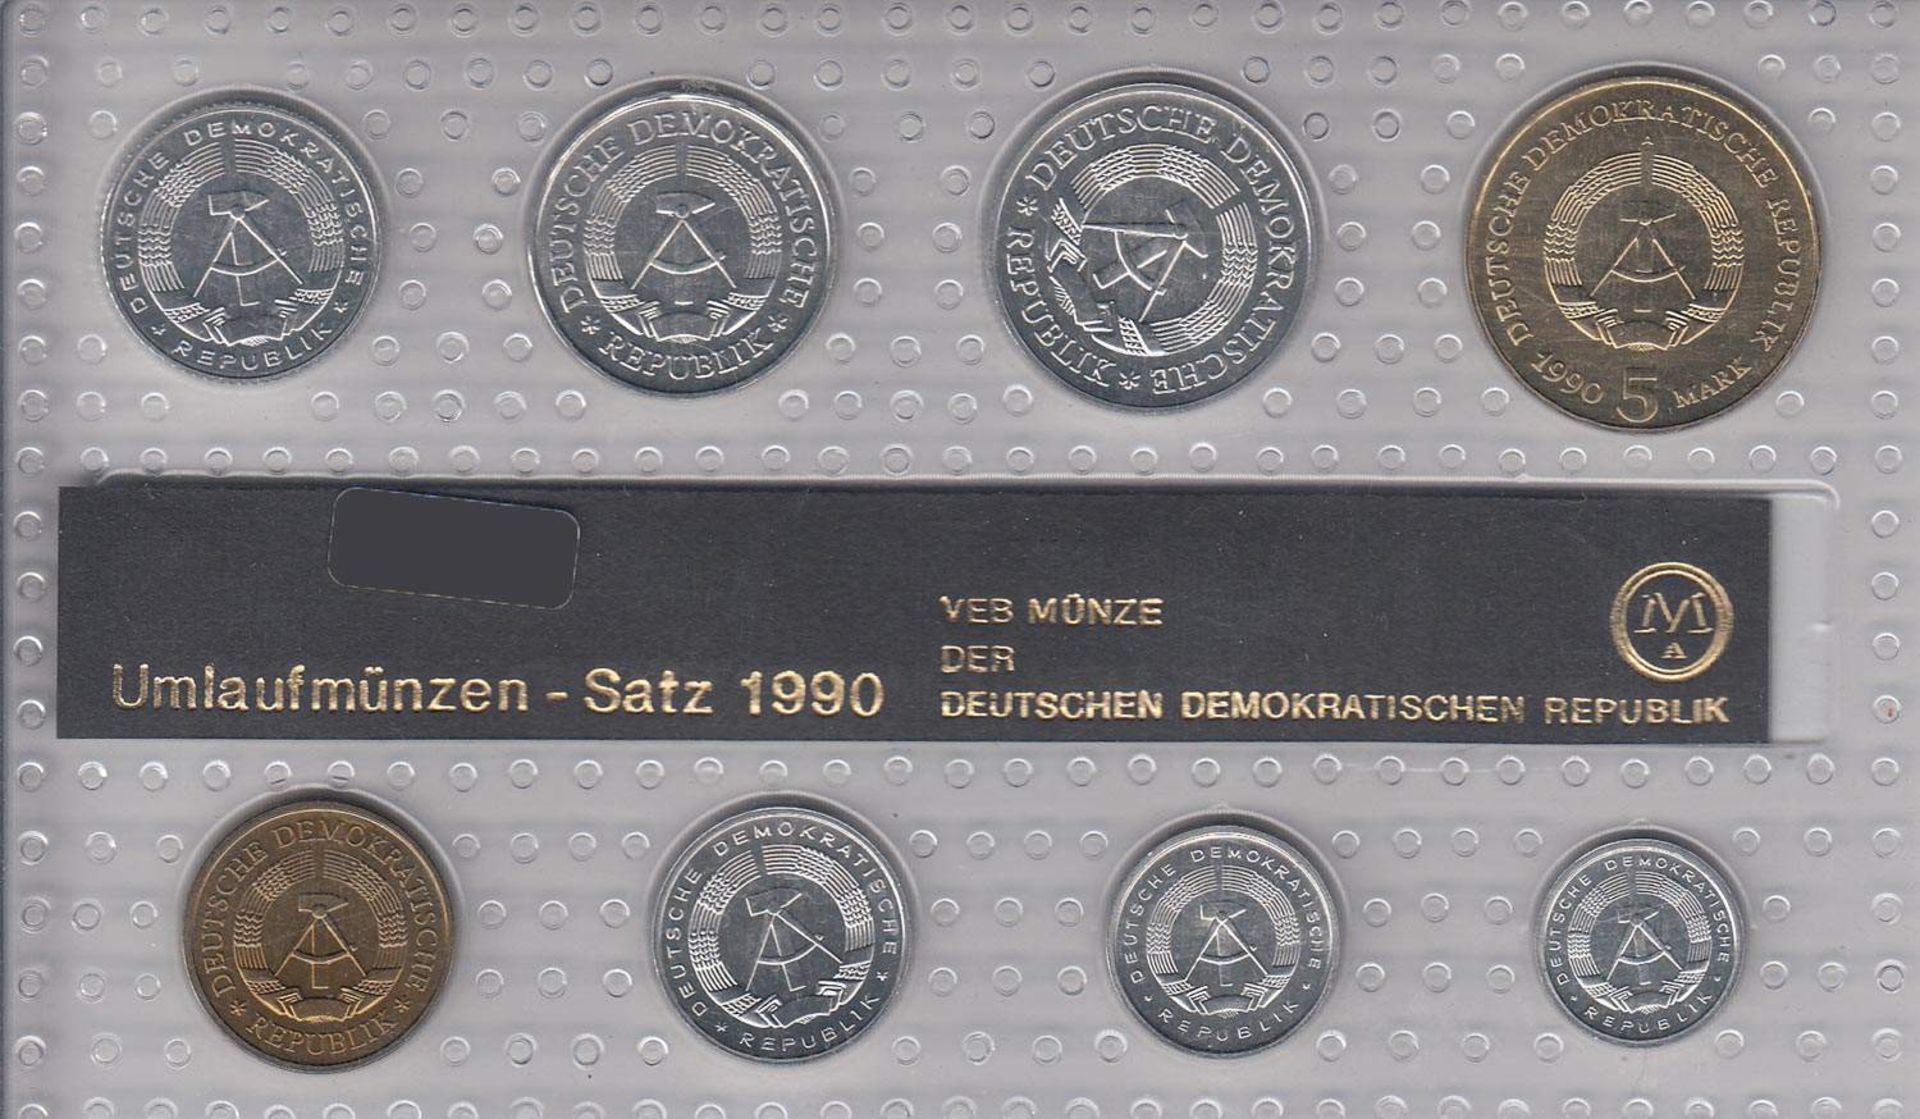 MünzsatzDDR 1990, 5 Mark - 1 Pfennig, stgl.Aufrufpreis: 5 EUR - Bild 2 aus 2